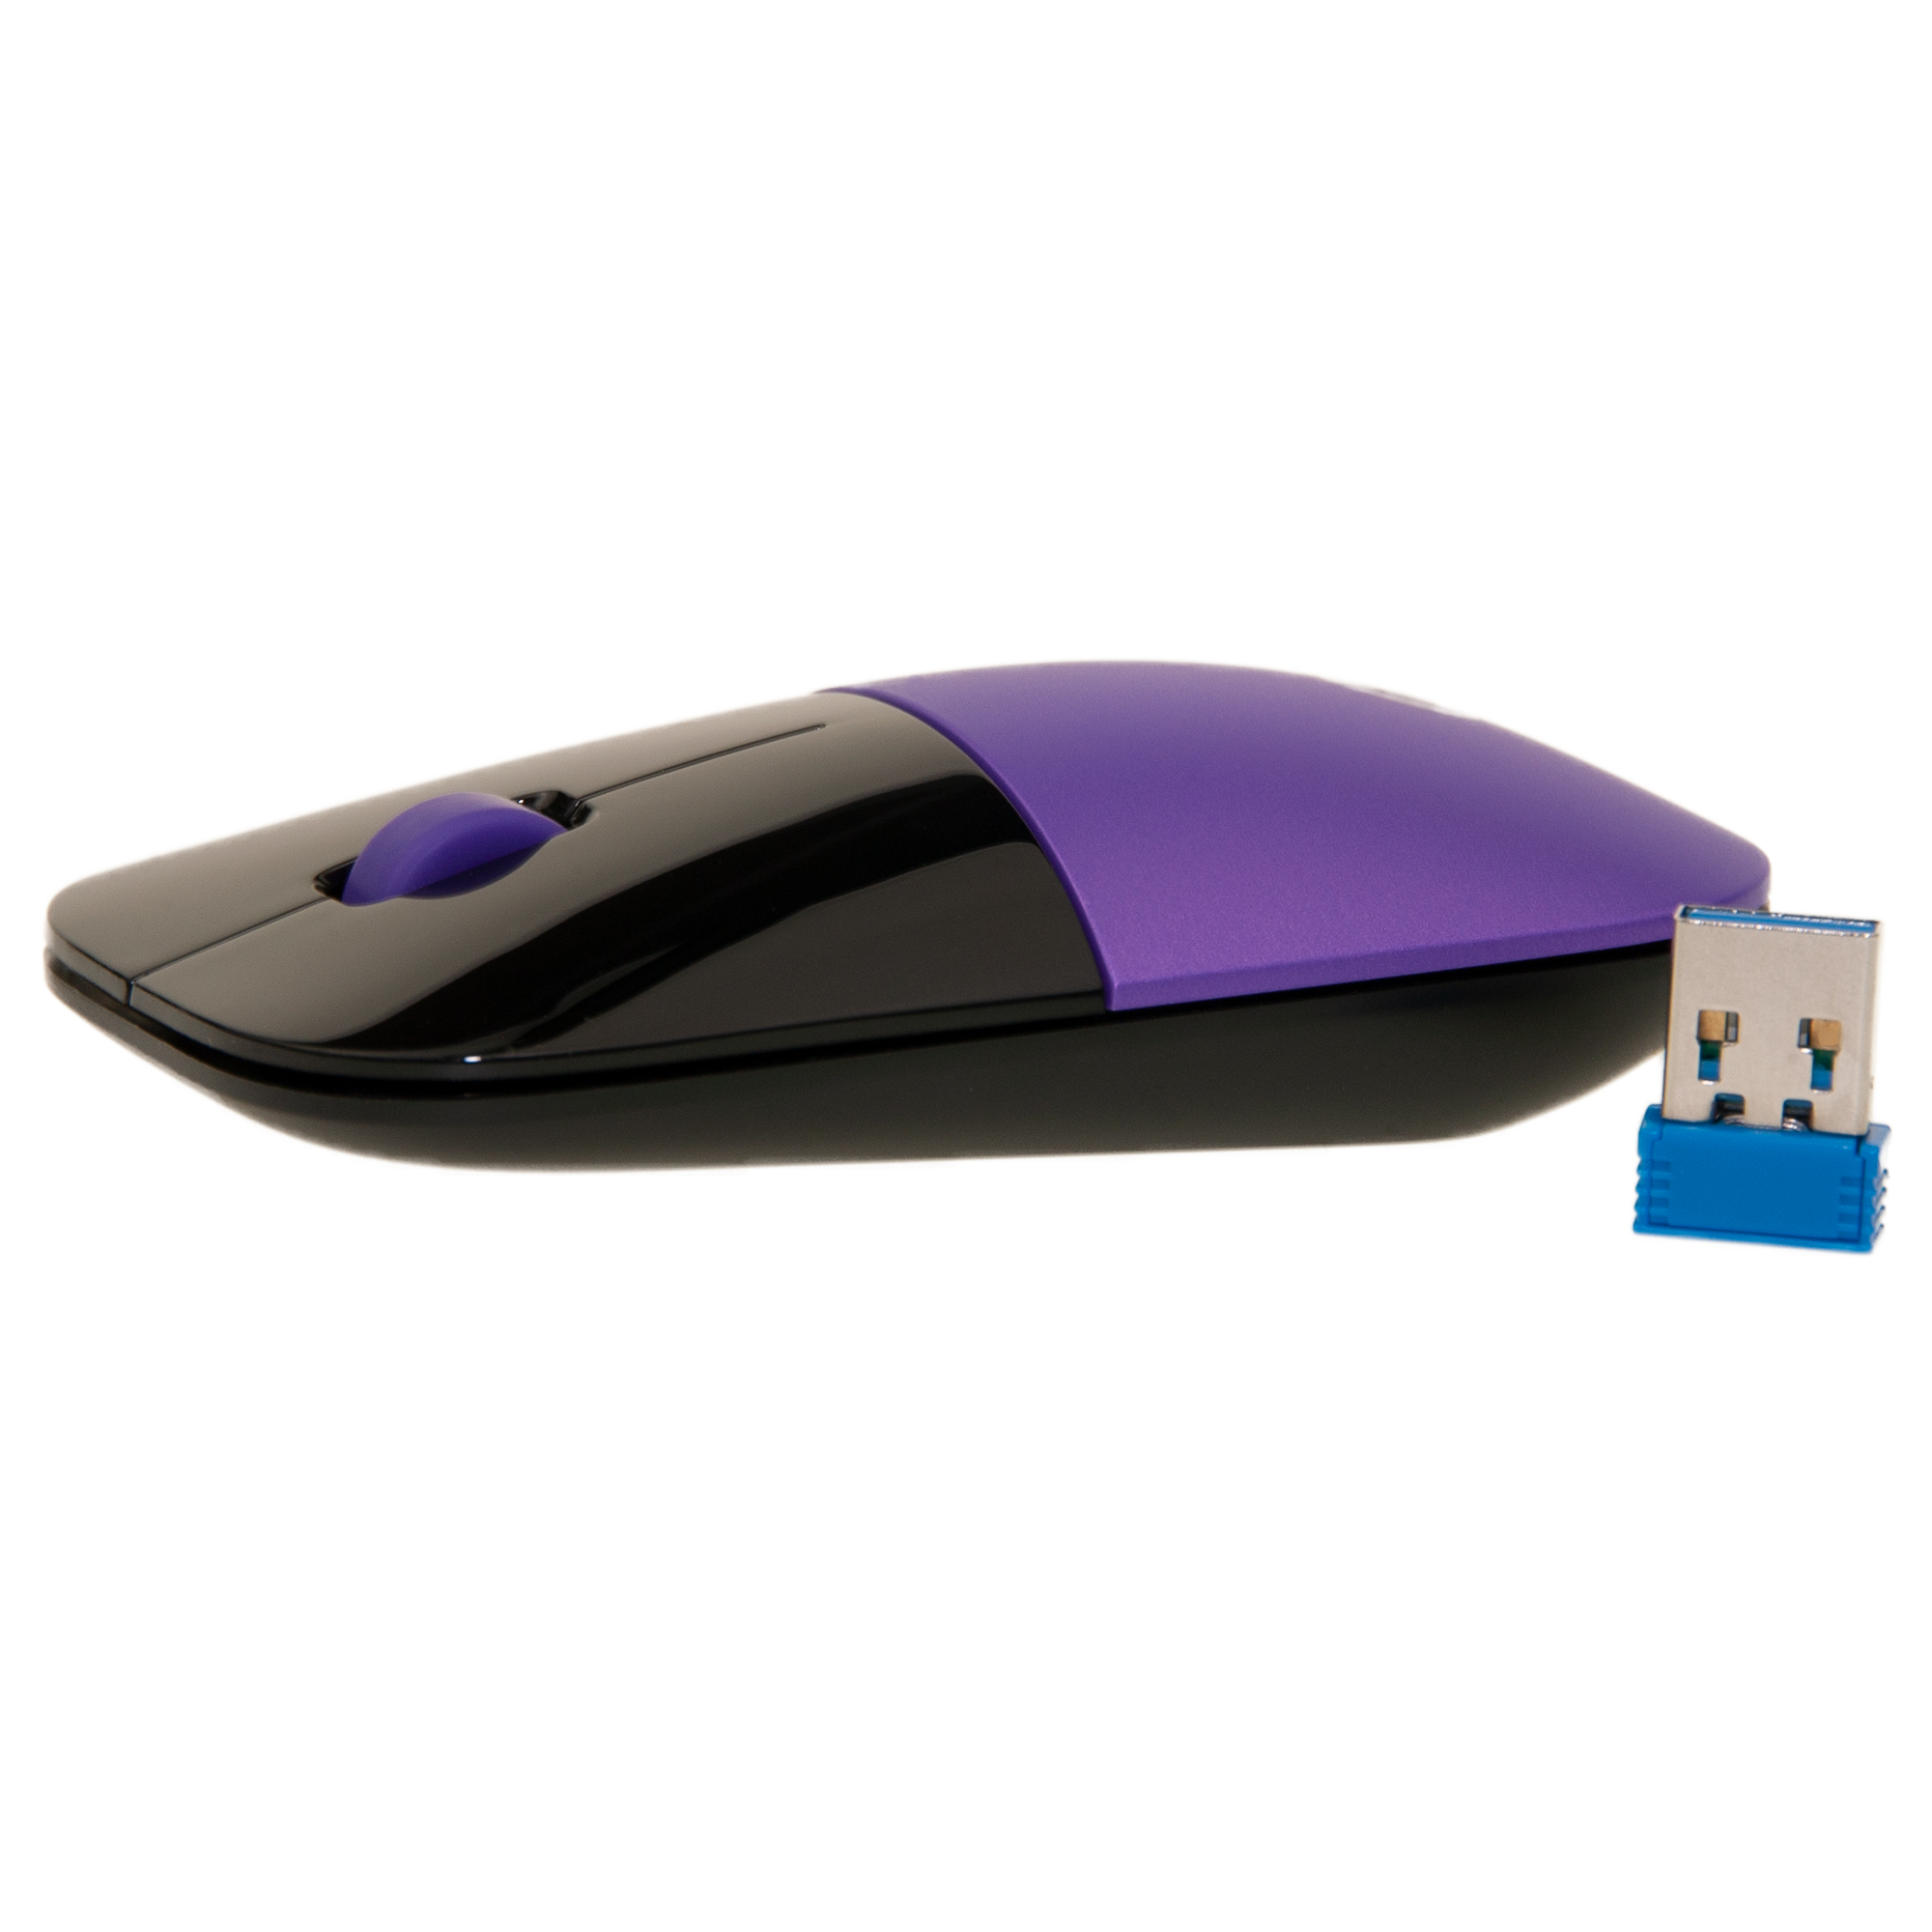 Purple HP Z3700 Wireless Mouse, Sleek Profile Stylish Low